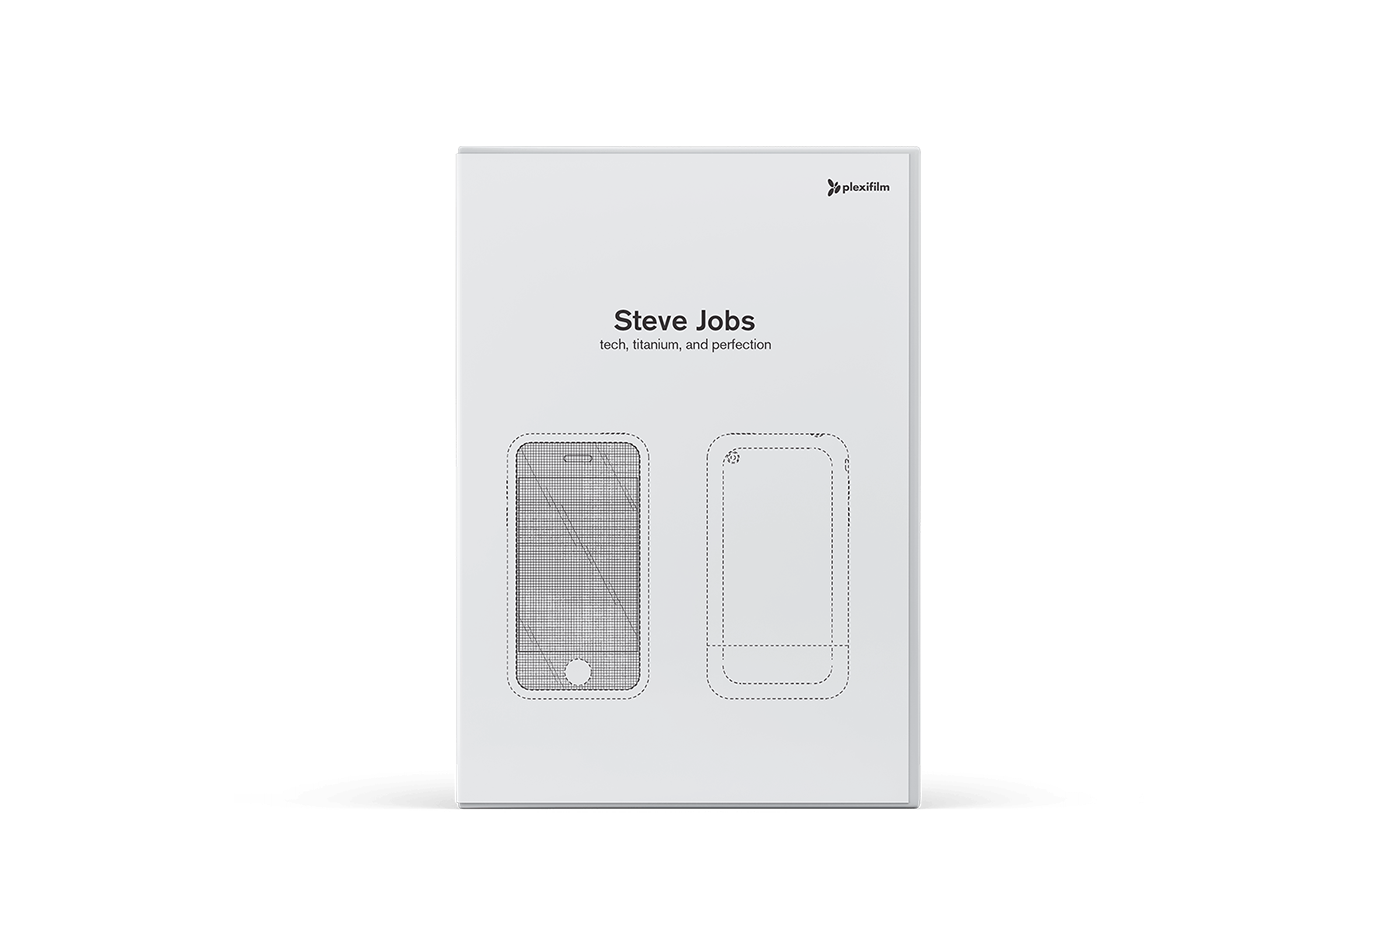 DVD DVD Series Plexifilm Dieter Rams Charles Eames EAMES phillip johnson Steve Jobs